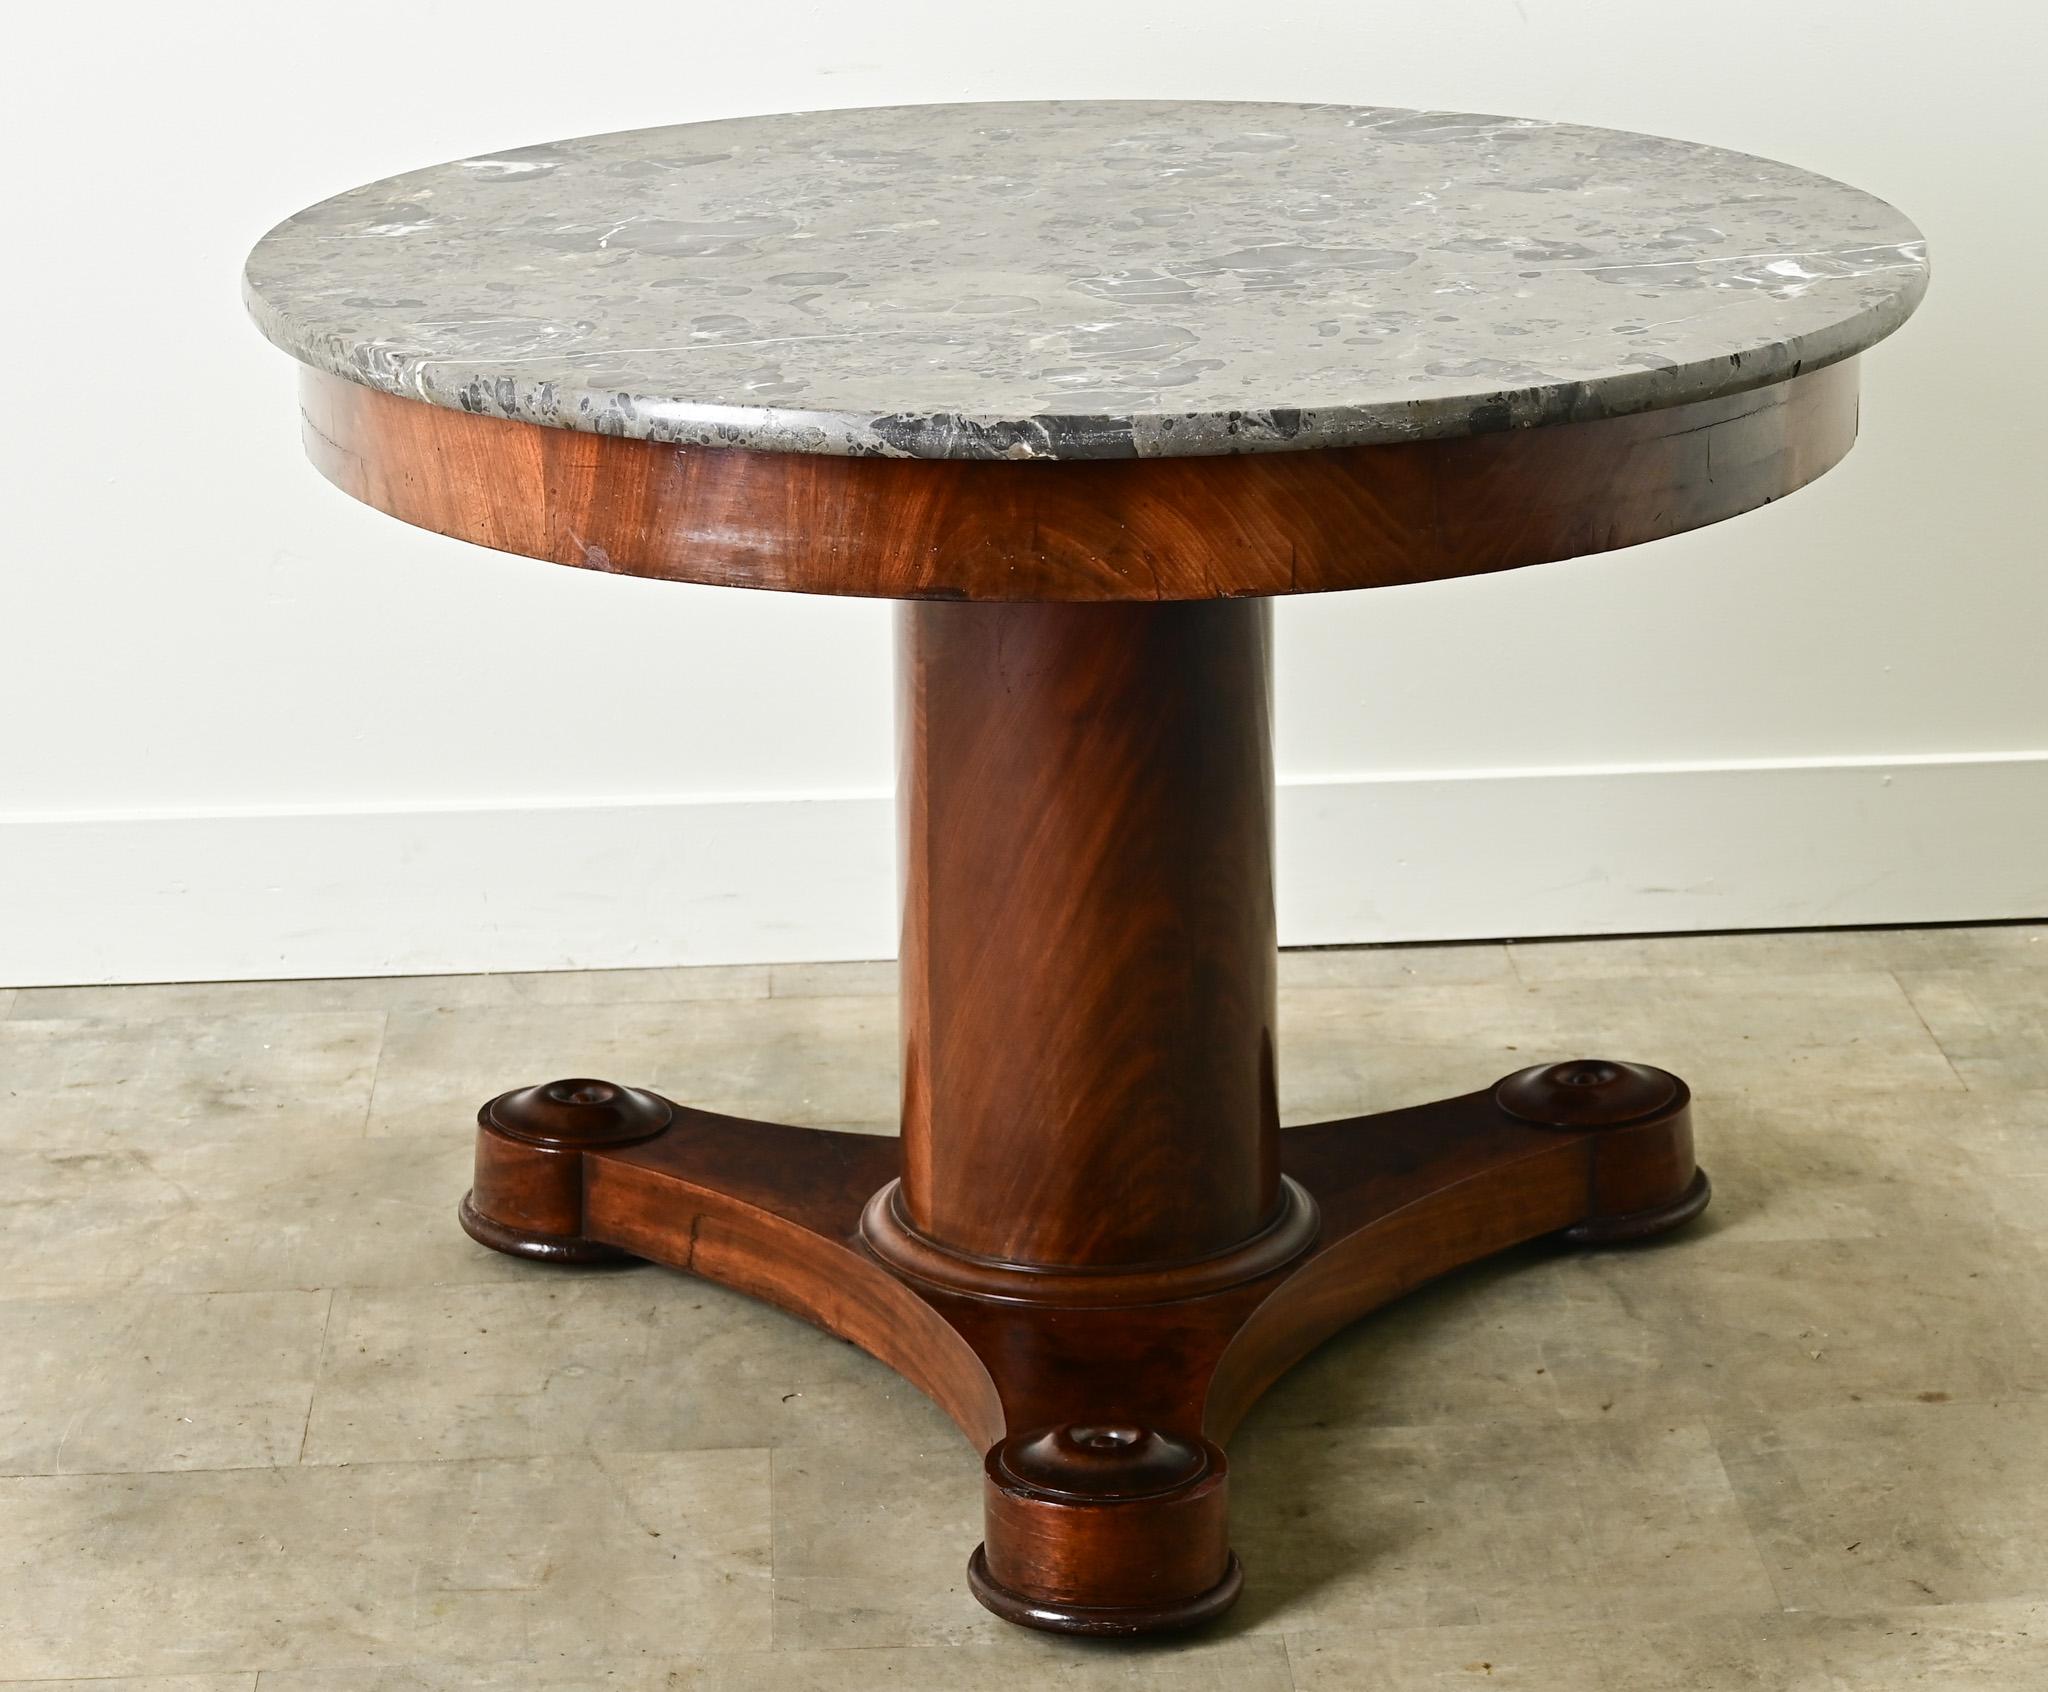 Ein großer runder Mitteltisch aus Frankreich um 1800. Die ursprüngliche Marmorplatte ist abgenutzt und farbenfroh und liegt auf einem edlen Mahagonisockel. Eine einfache Schürze sitzt über einem säulenförmigen Mittelsockel auf drei konkaven,